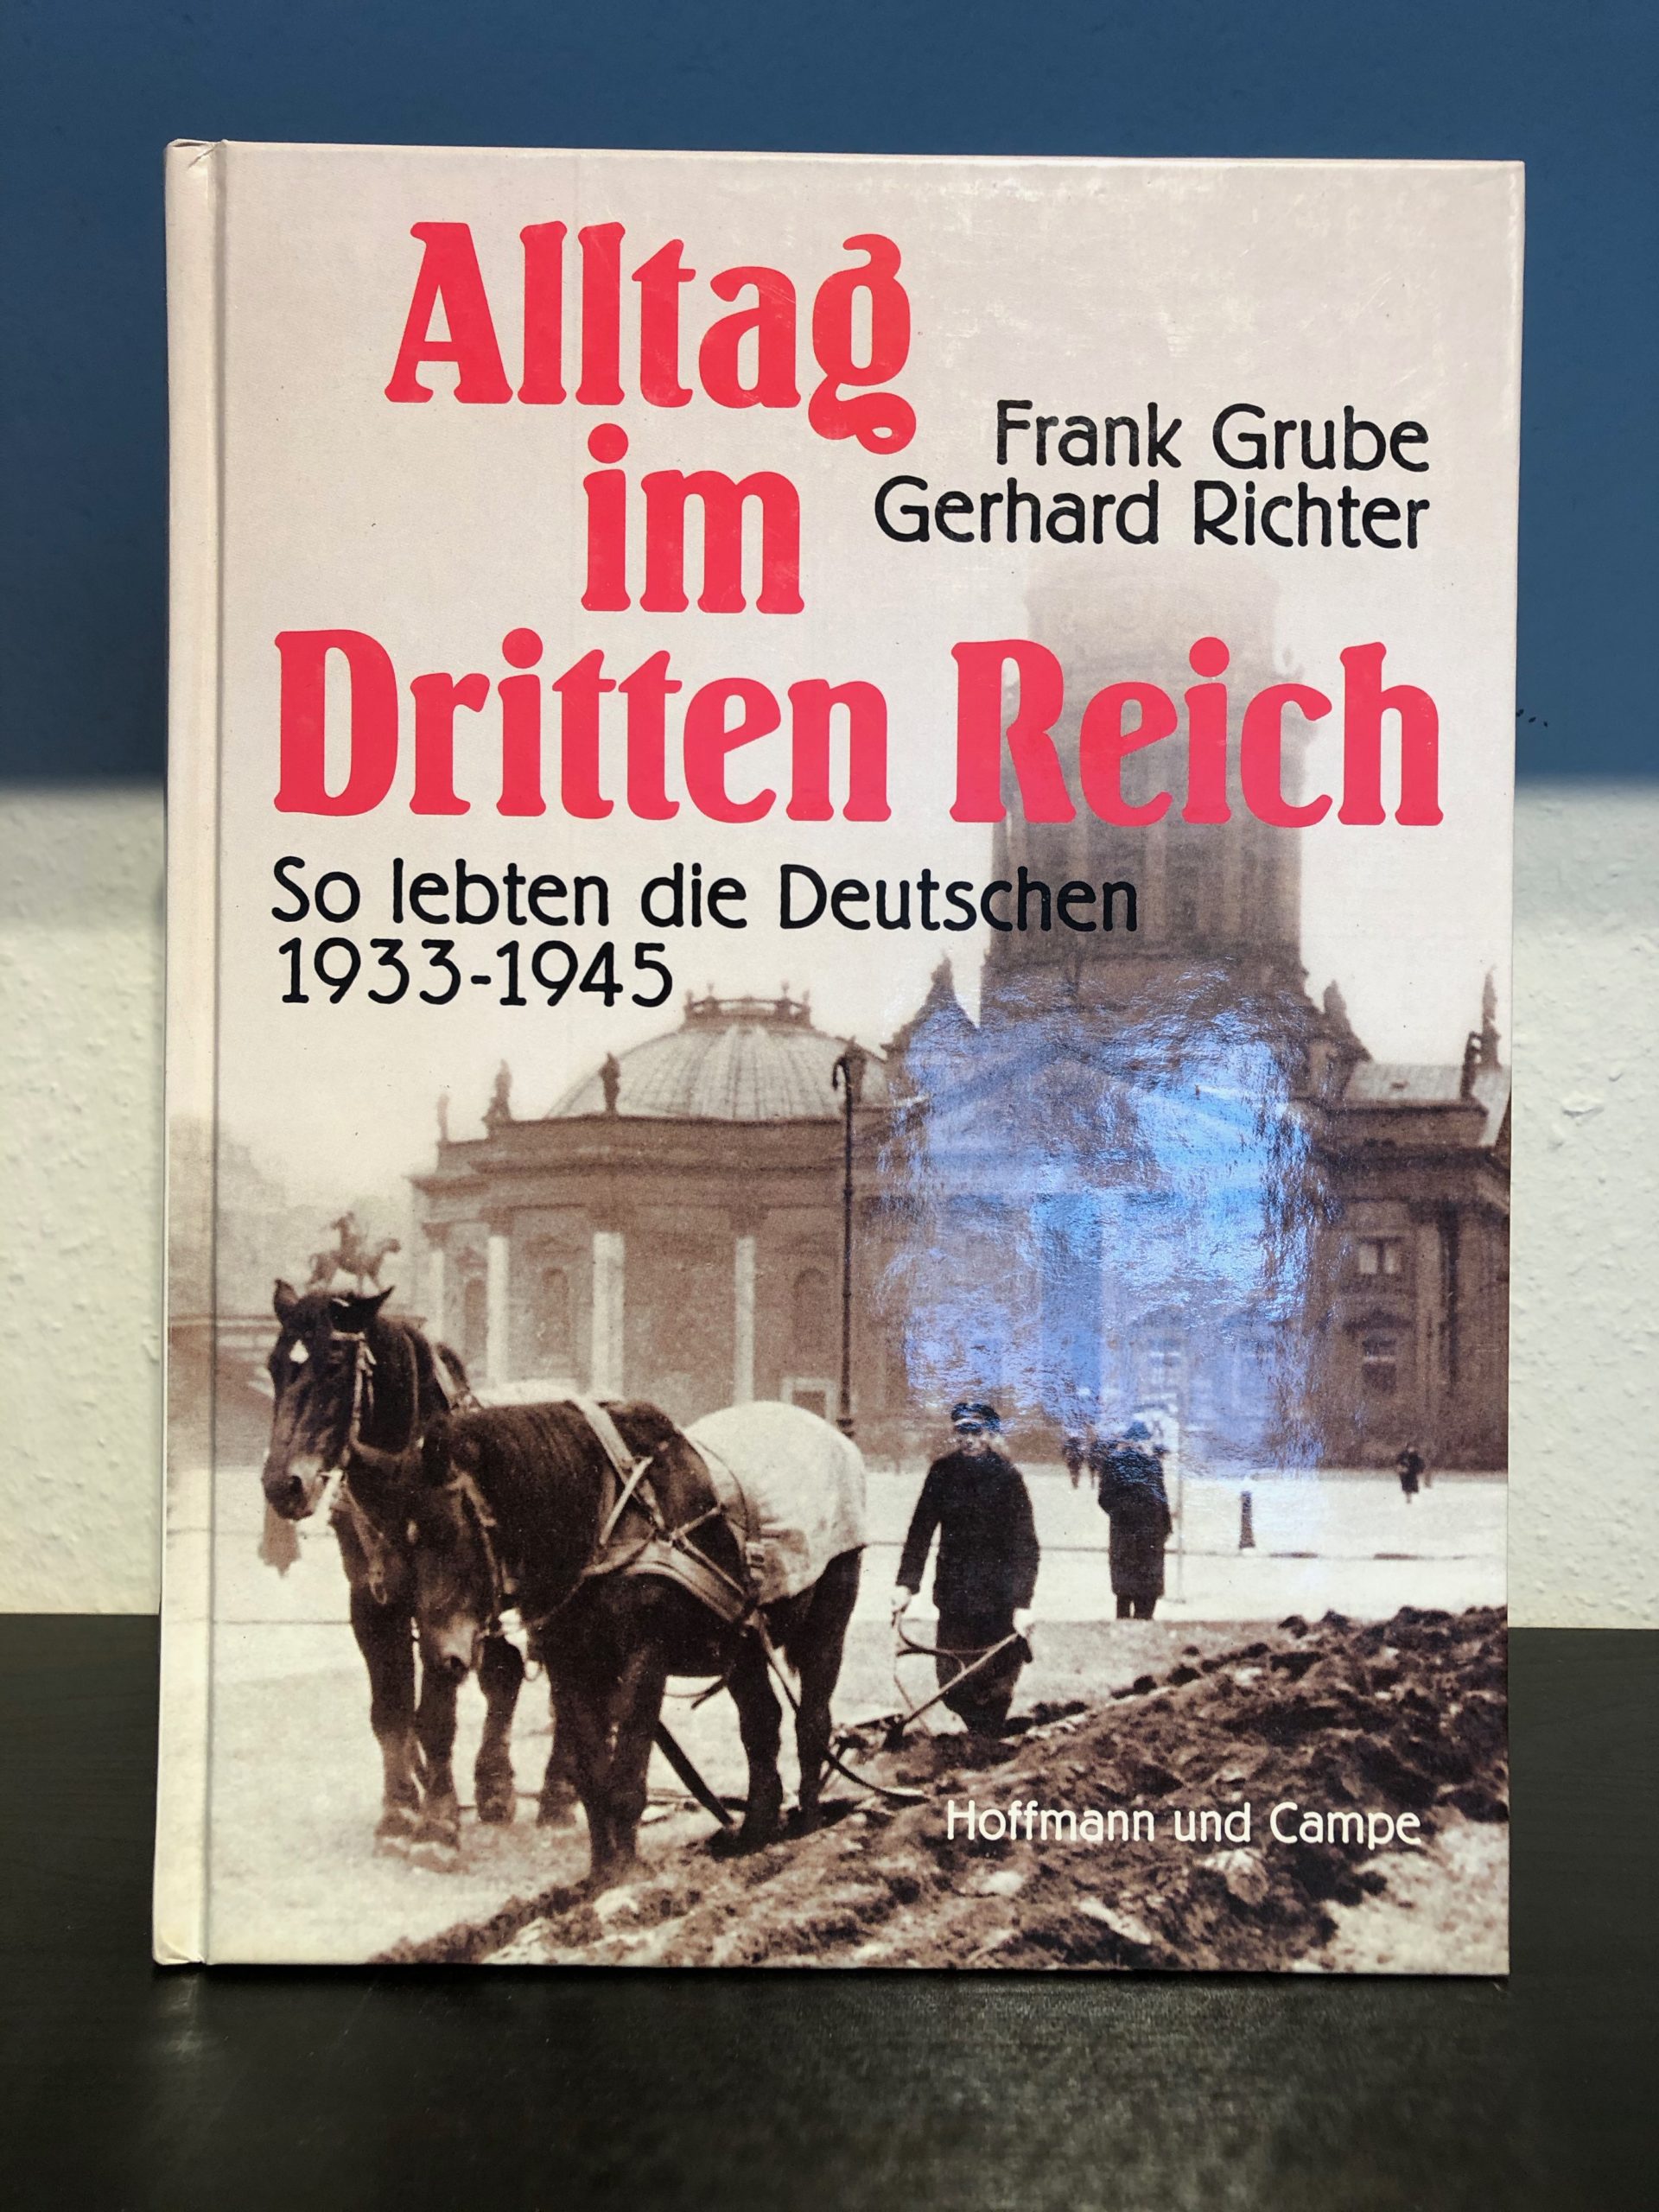 Alltag im Dritten Reich - So lebten die Deutschen 1933-1945 - Frank Grube, Gerhard Richter main image